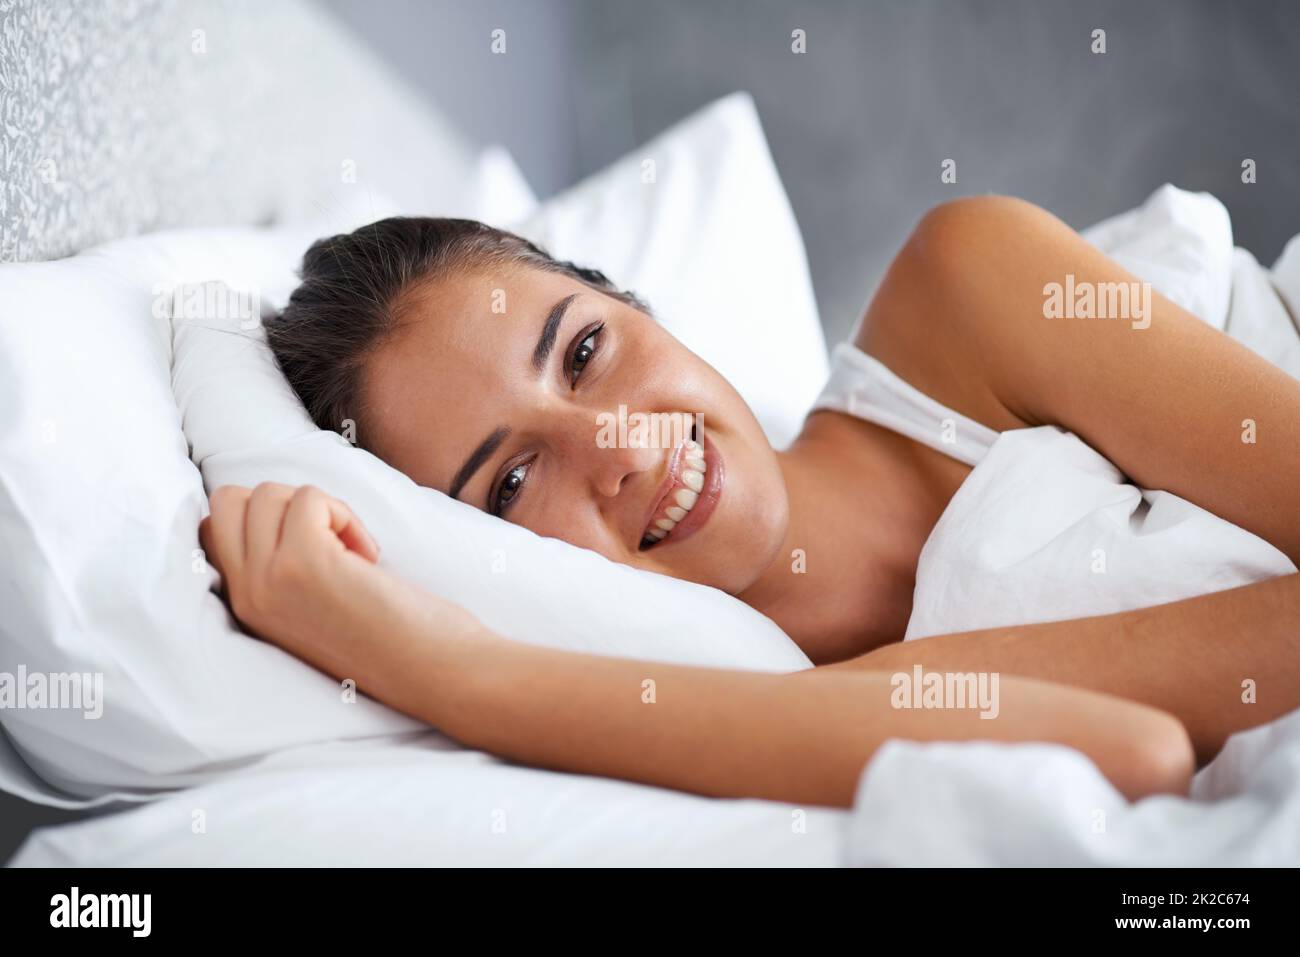 Ich hoffe, dass ich im Bett frühstücken kann. Kurzer Schuss einer schönen  jungen Frau, die im Bett ruht Stockfotografie - Alamy